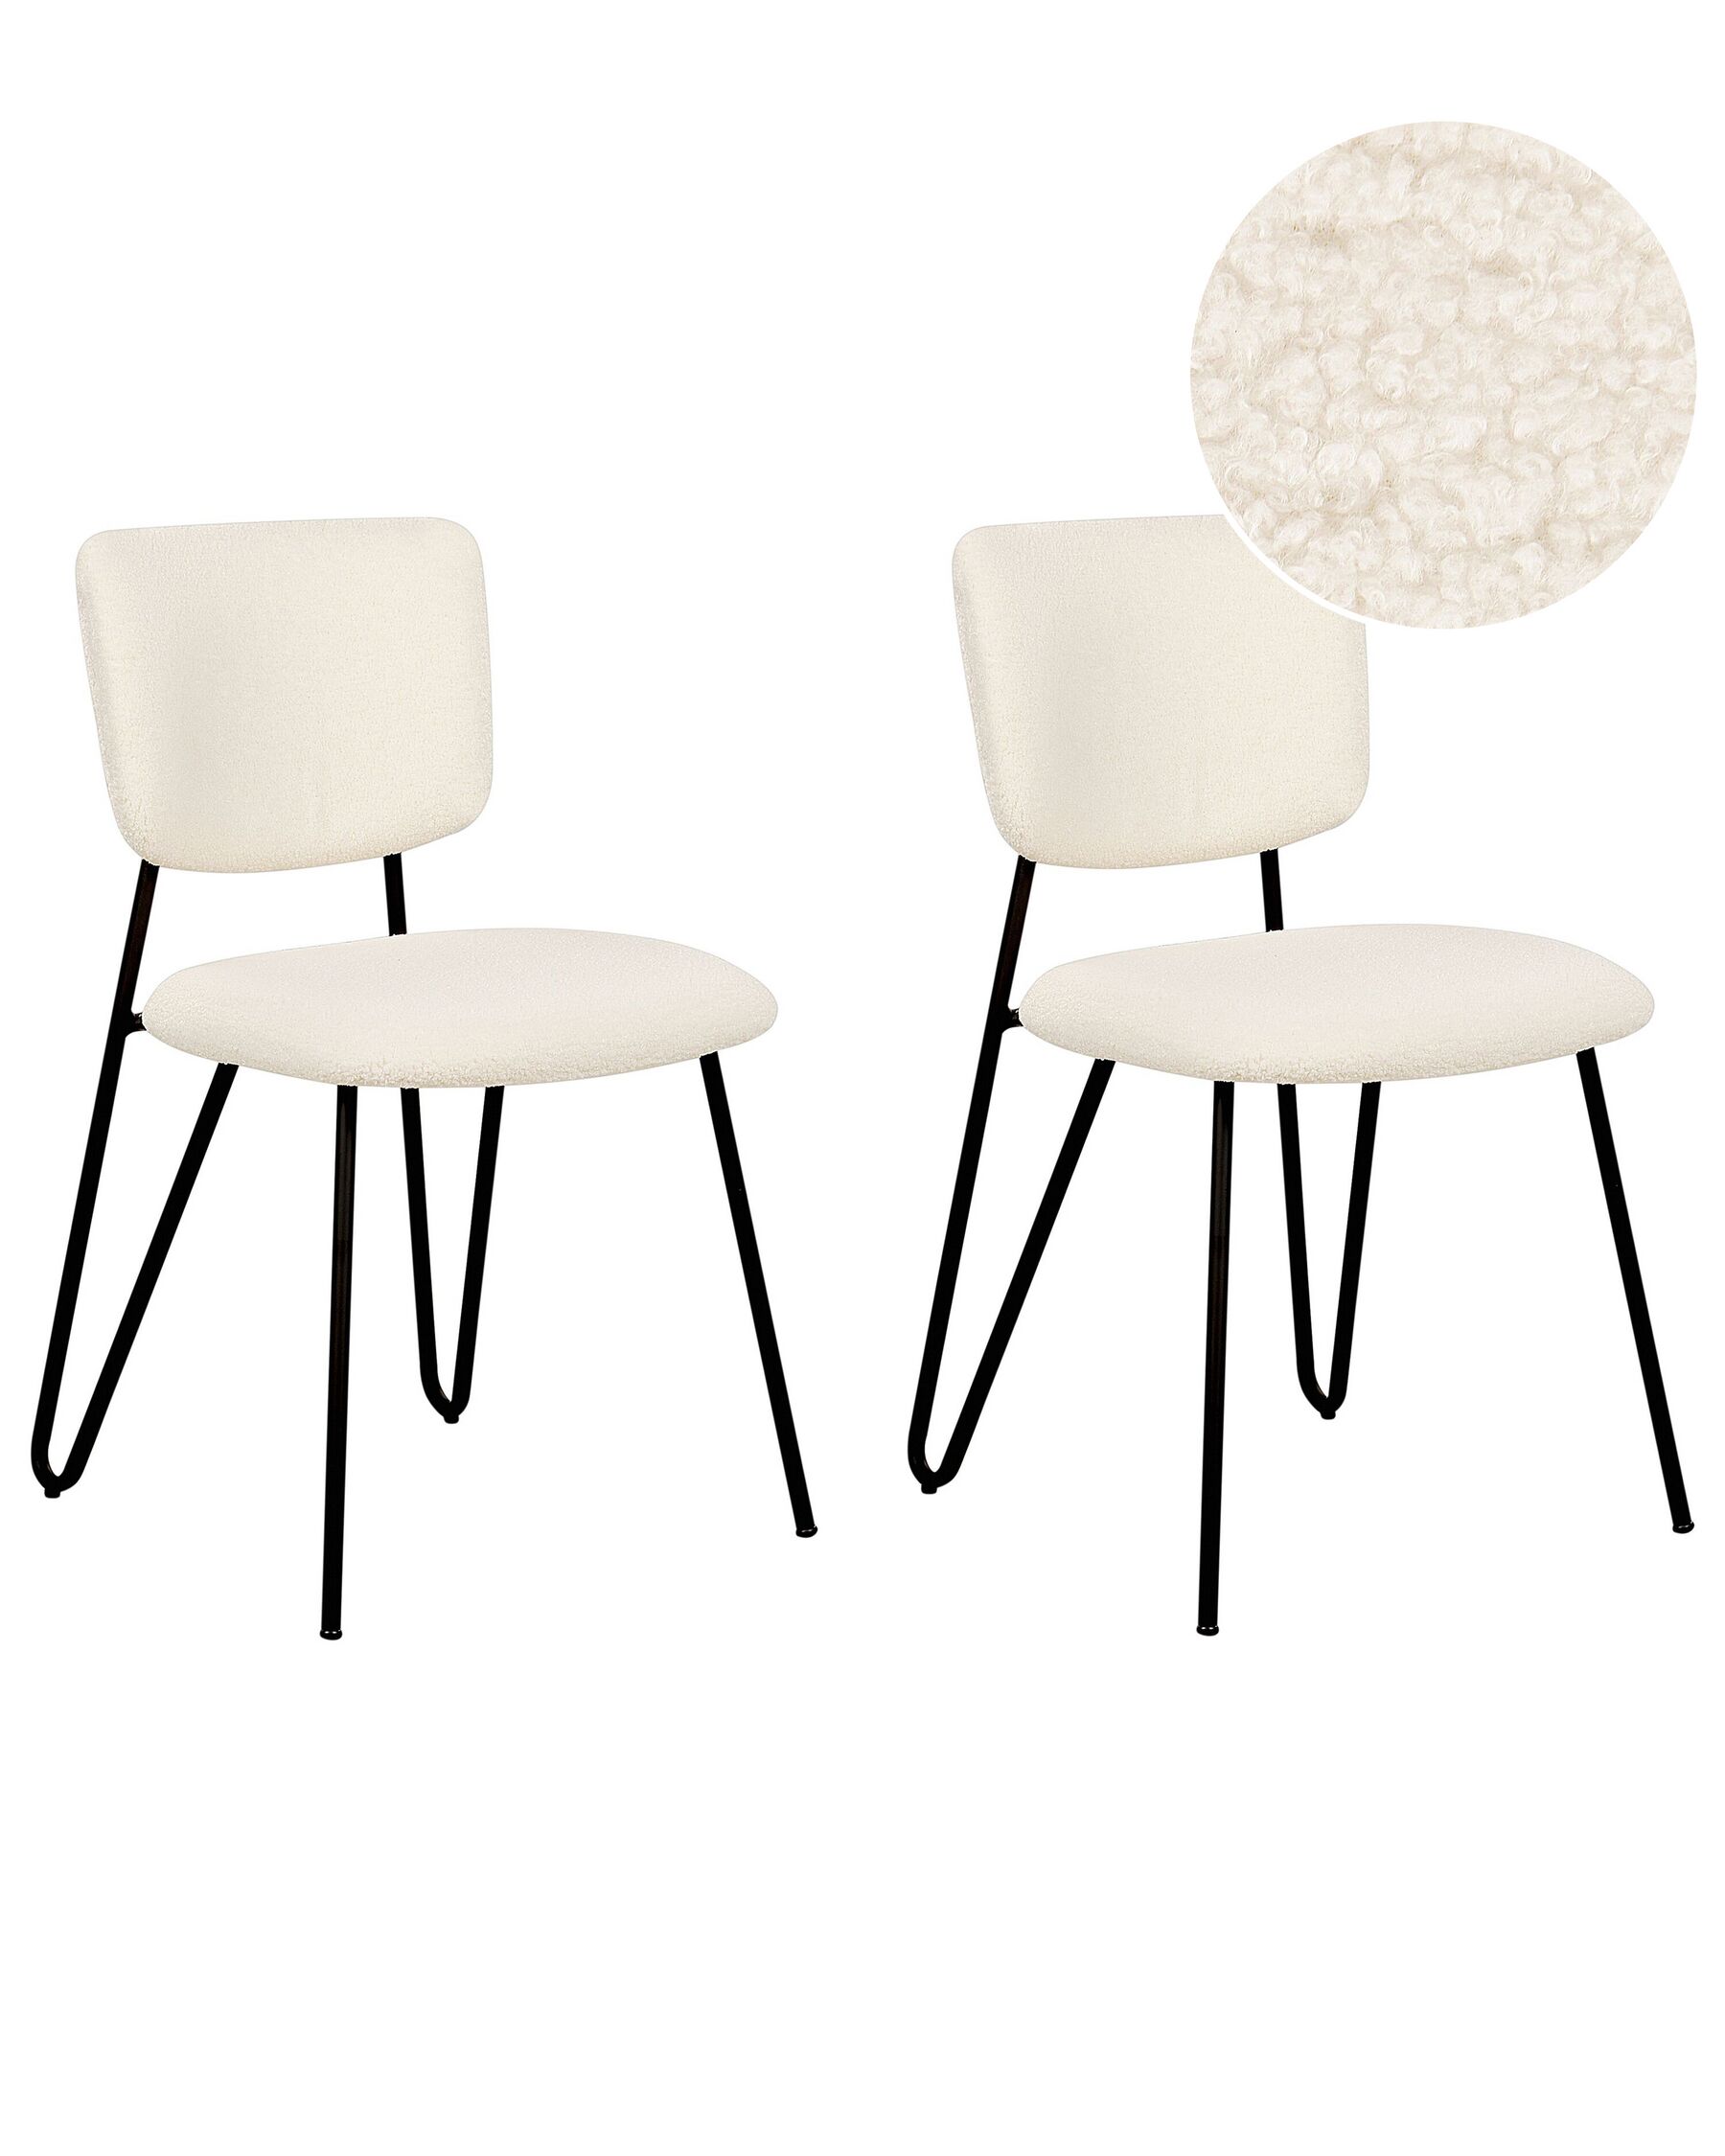 Sada 2 jídelních židlí s buklé čalouněním krémově bílé NELKO_884719